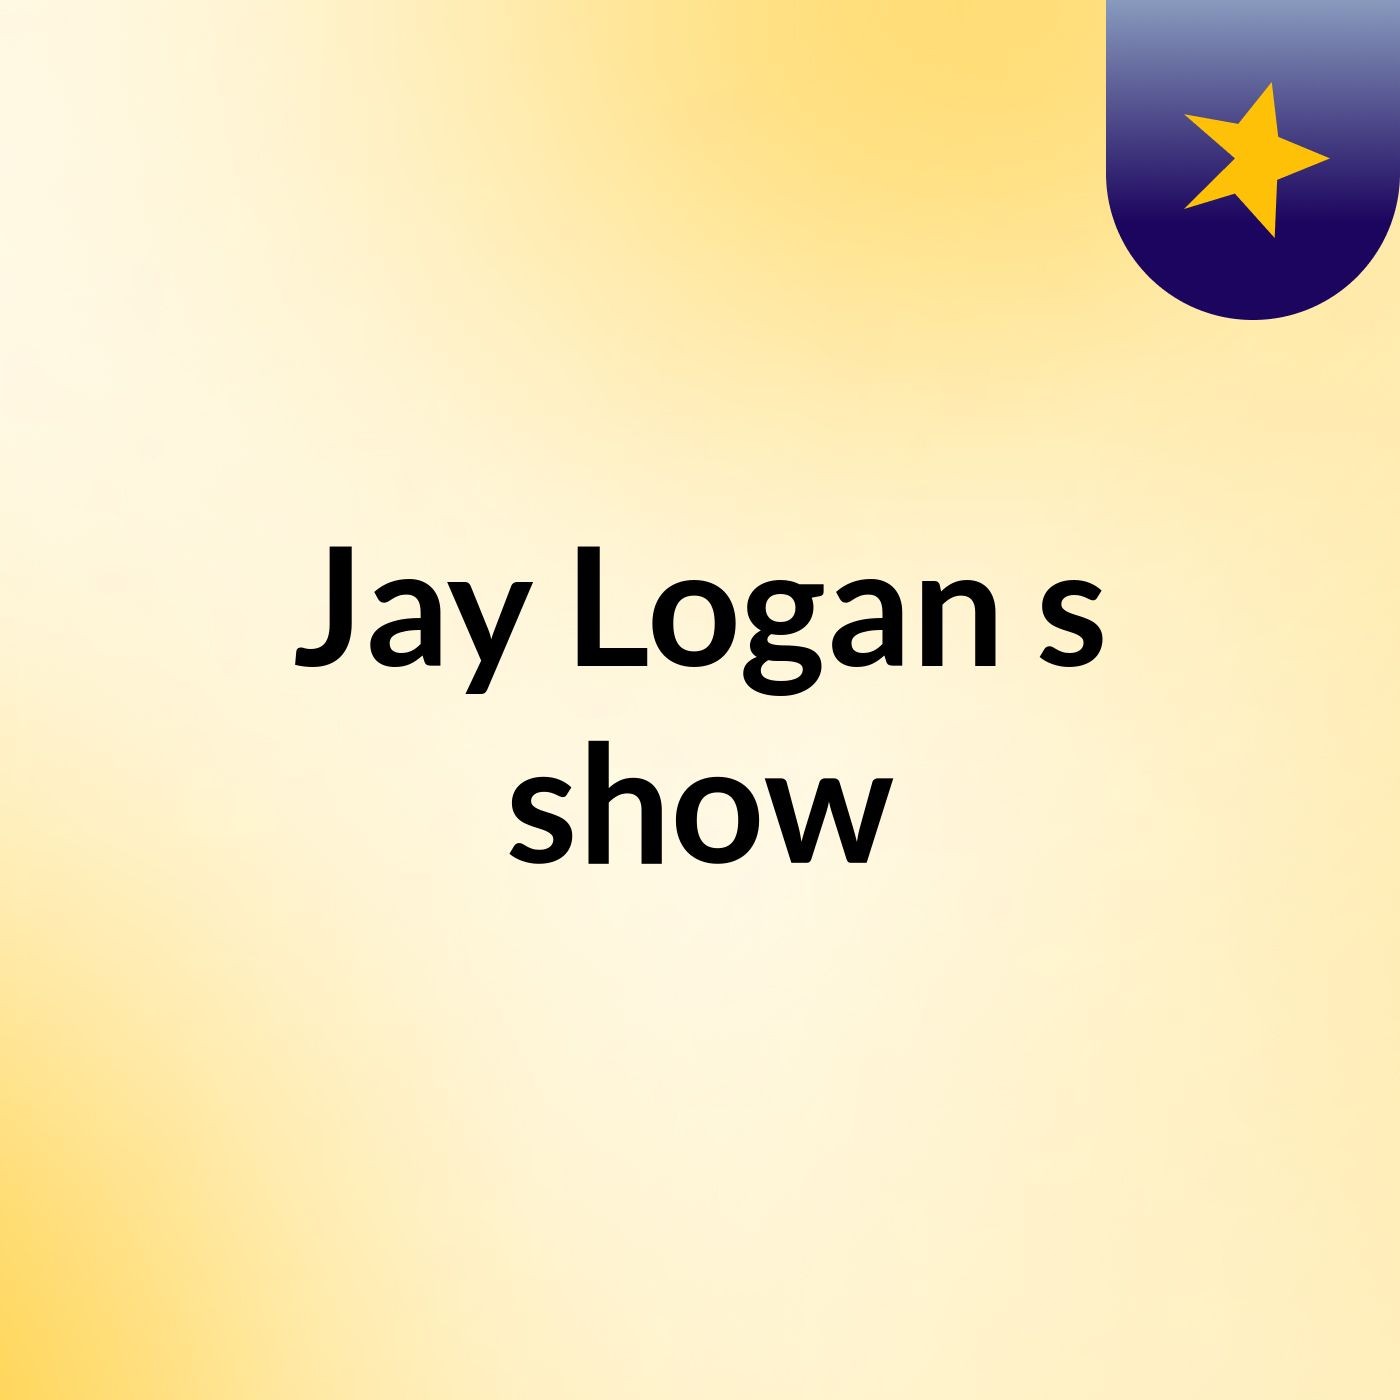 Jay Logan's show